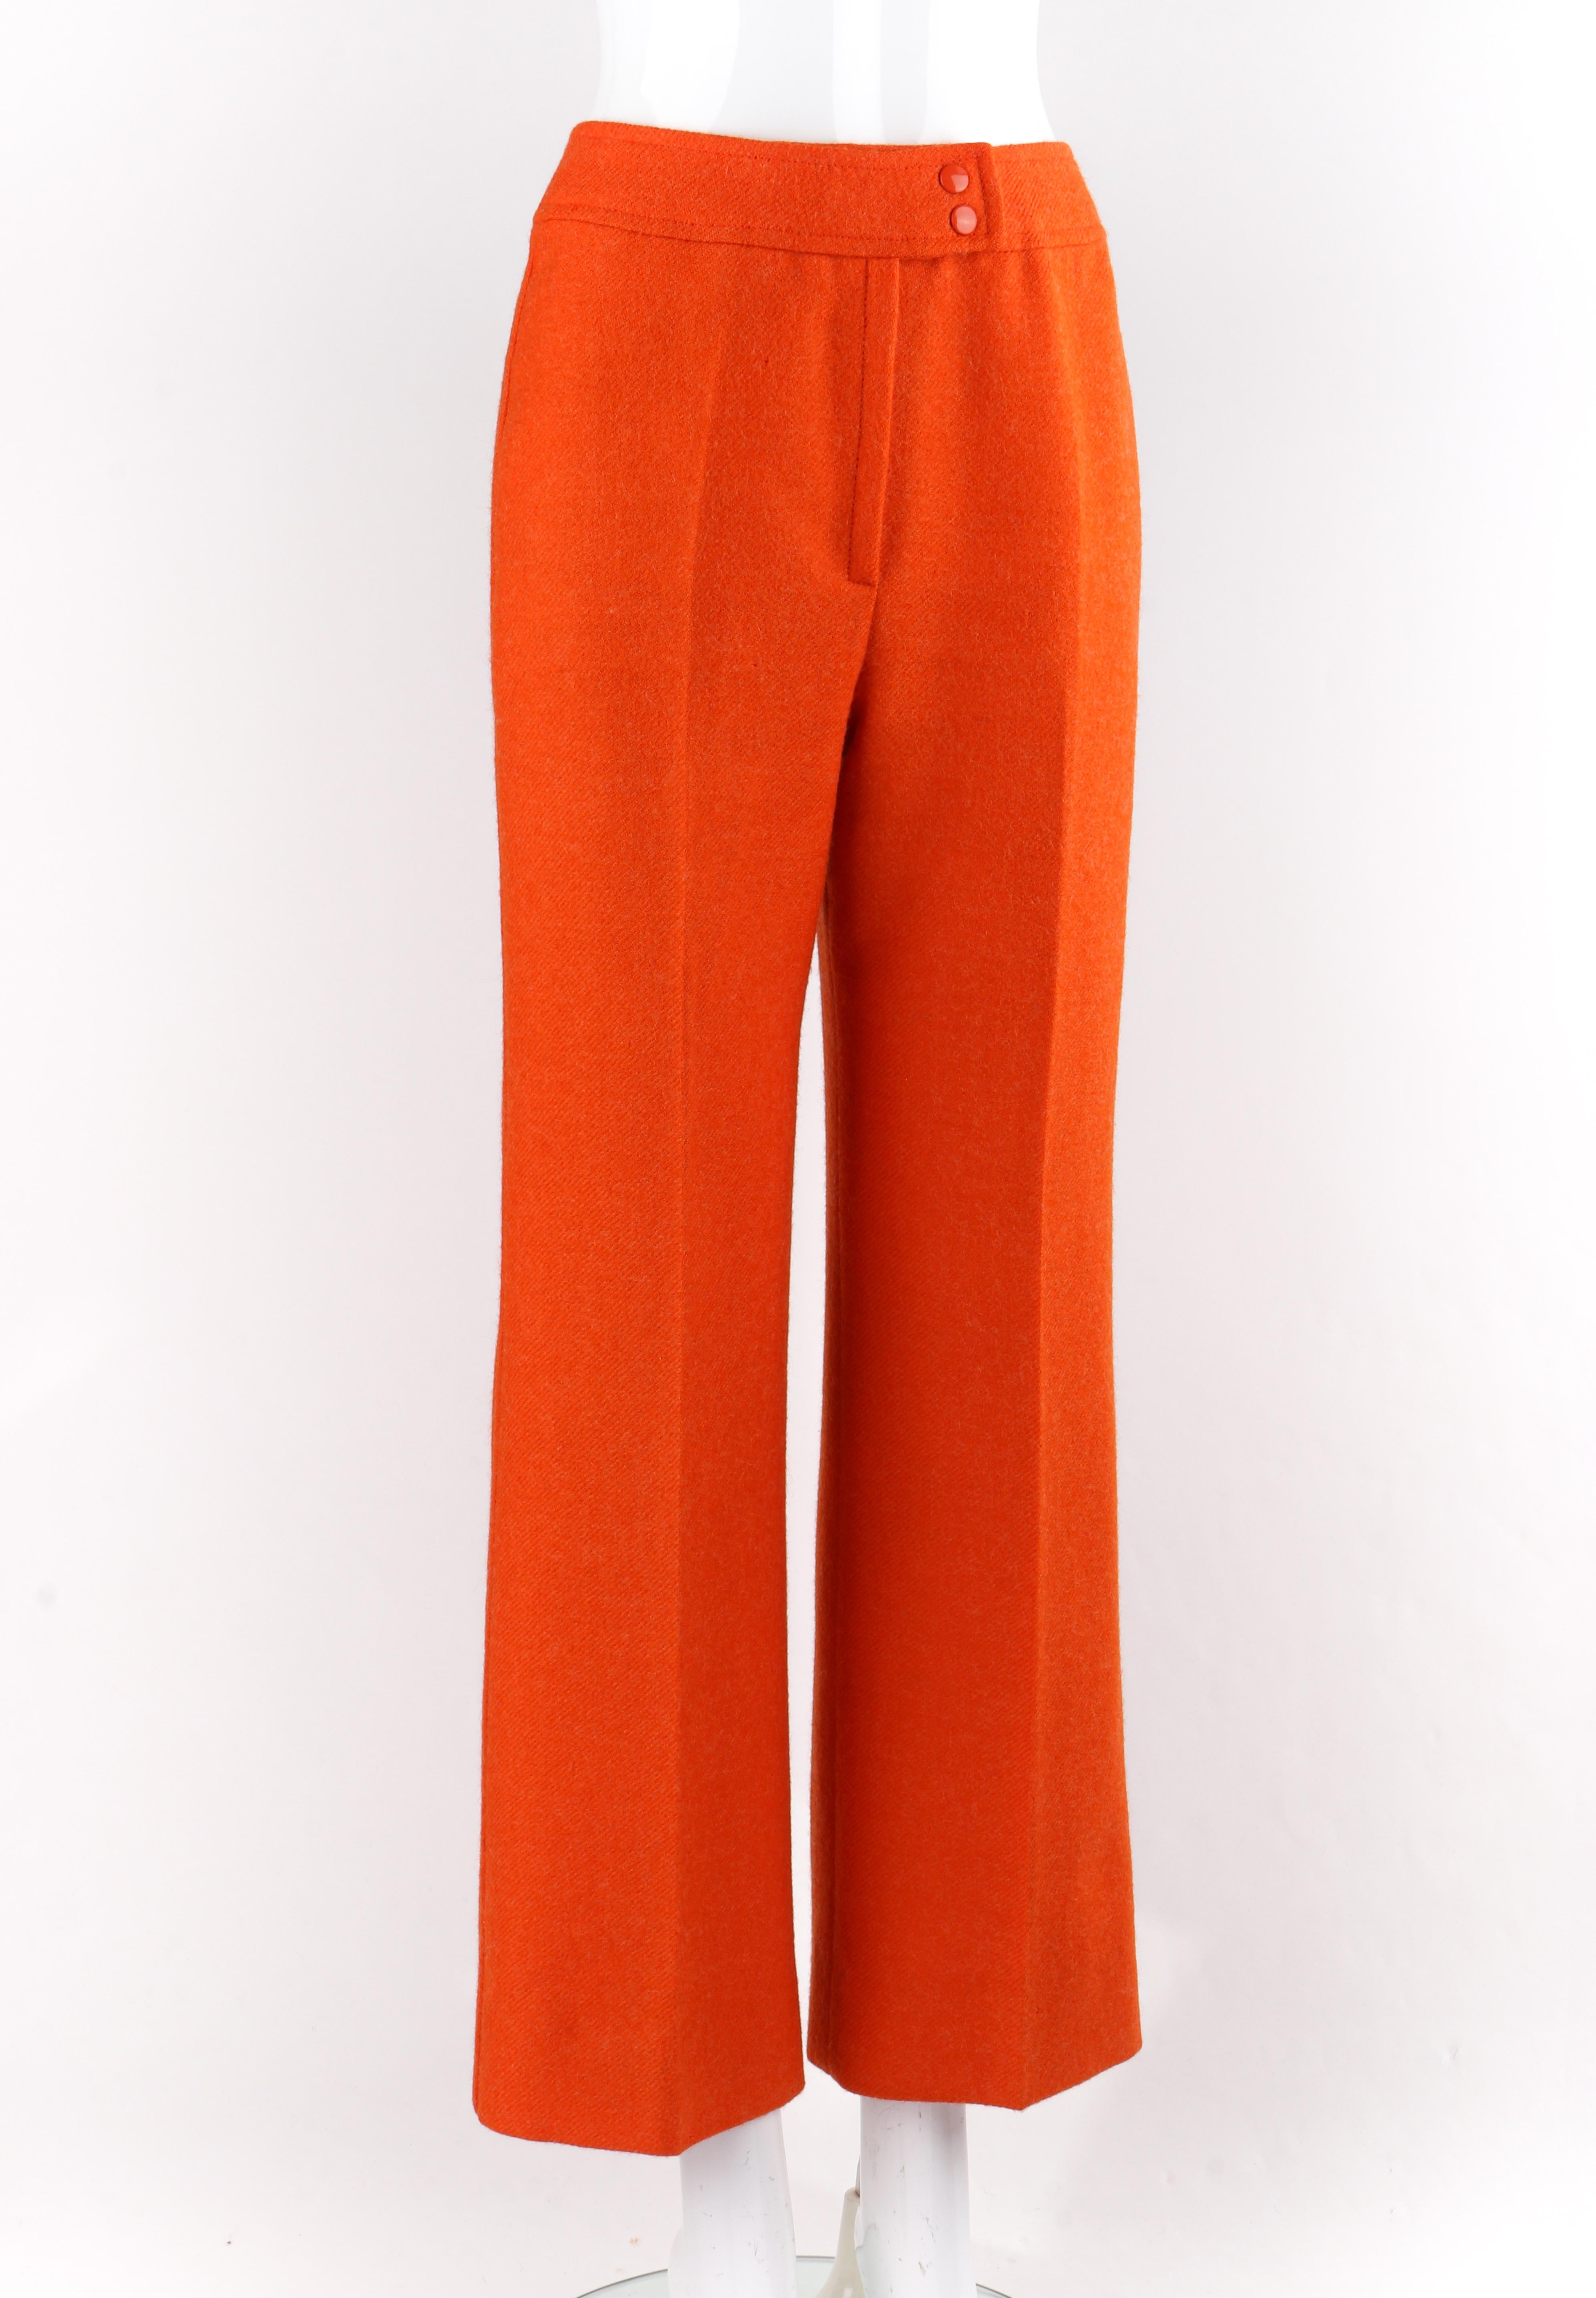 COURREGES c.1970’s Hyperbole Bright Orange High Rise Wide Leg Trouser Pants
Circa: 1970’s
Label(s): Courreges Paris Hyperbole
Designer: Andre Courreges
Style: Wide leg high rise trouser pants
Color(s): Orange
Lined: Yes
Unmarked Fabric Content (feel